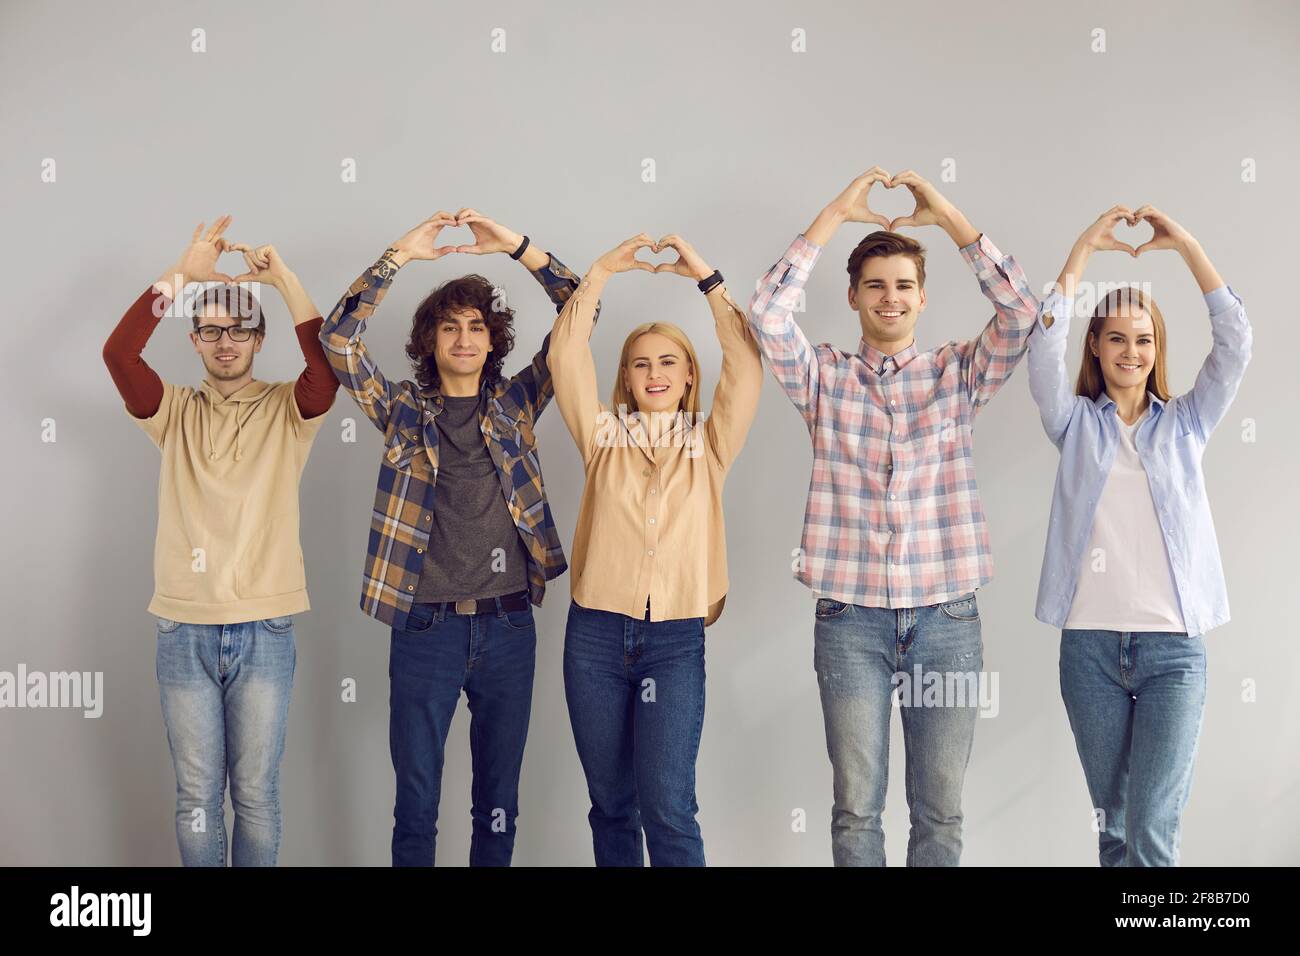 Groupe d'étudiants adolescents montrant de la sympathie d'amour faire le geste de coeur prise de vue en studio Banque D'Images